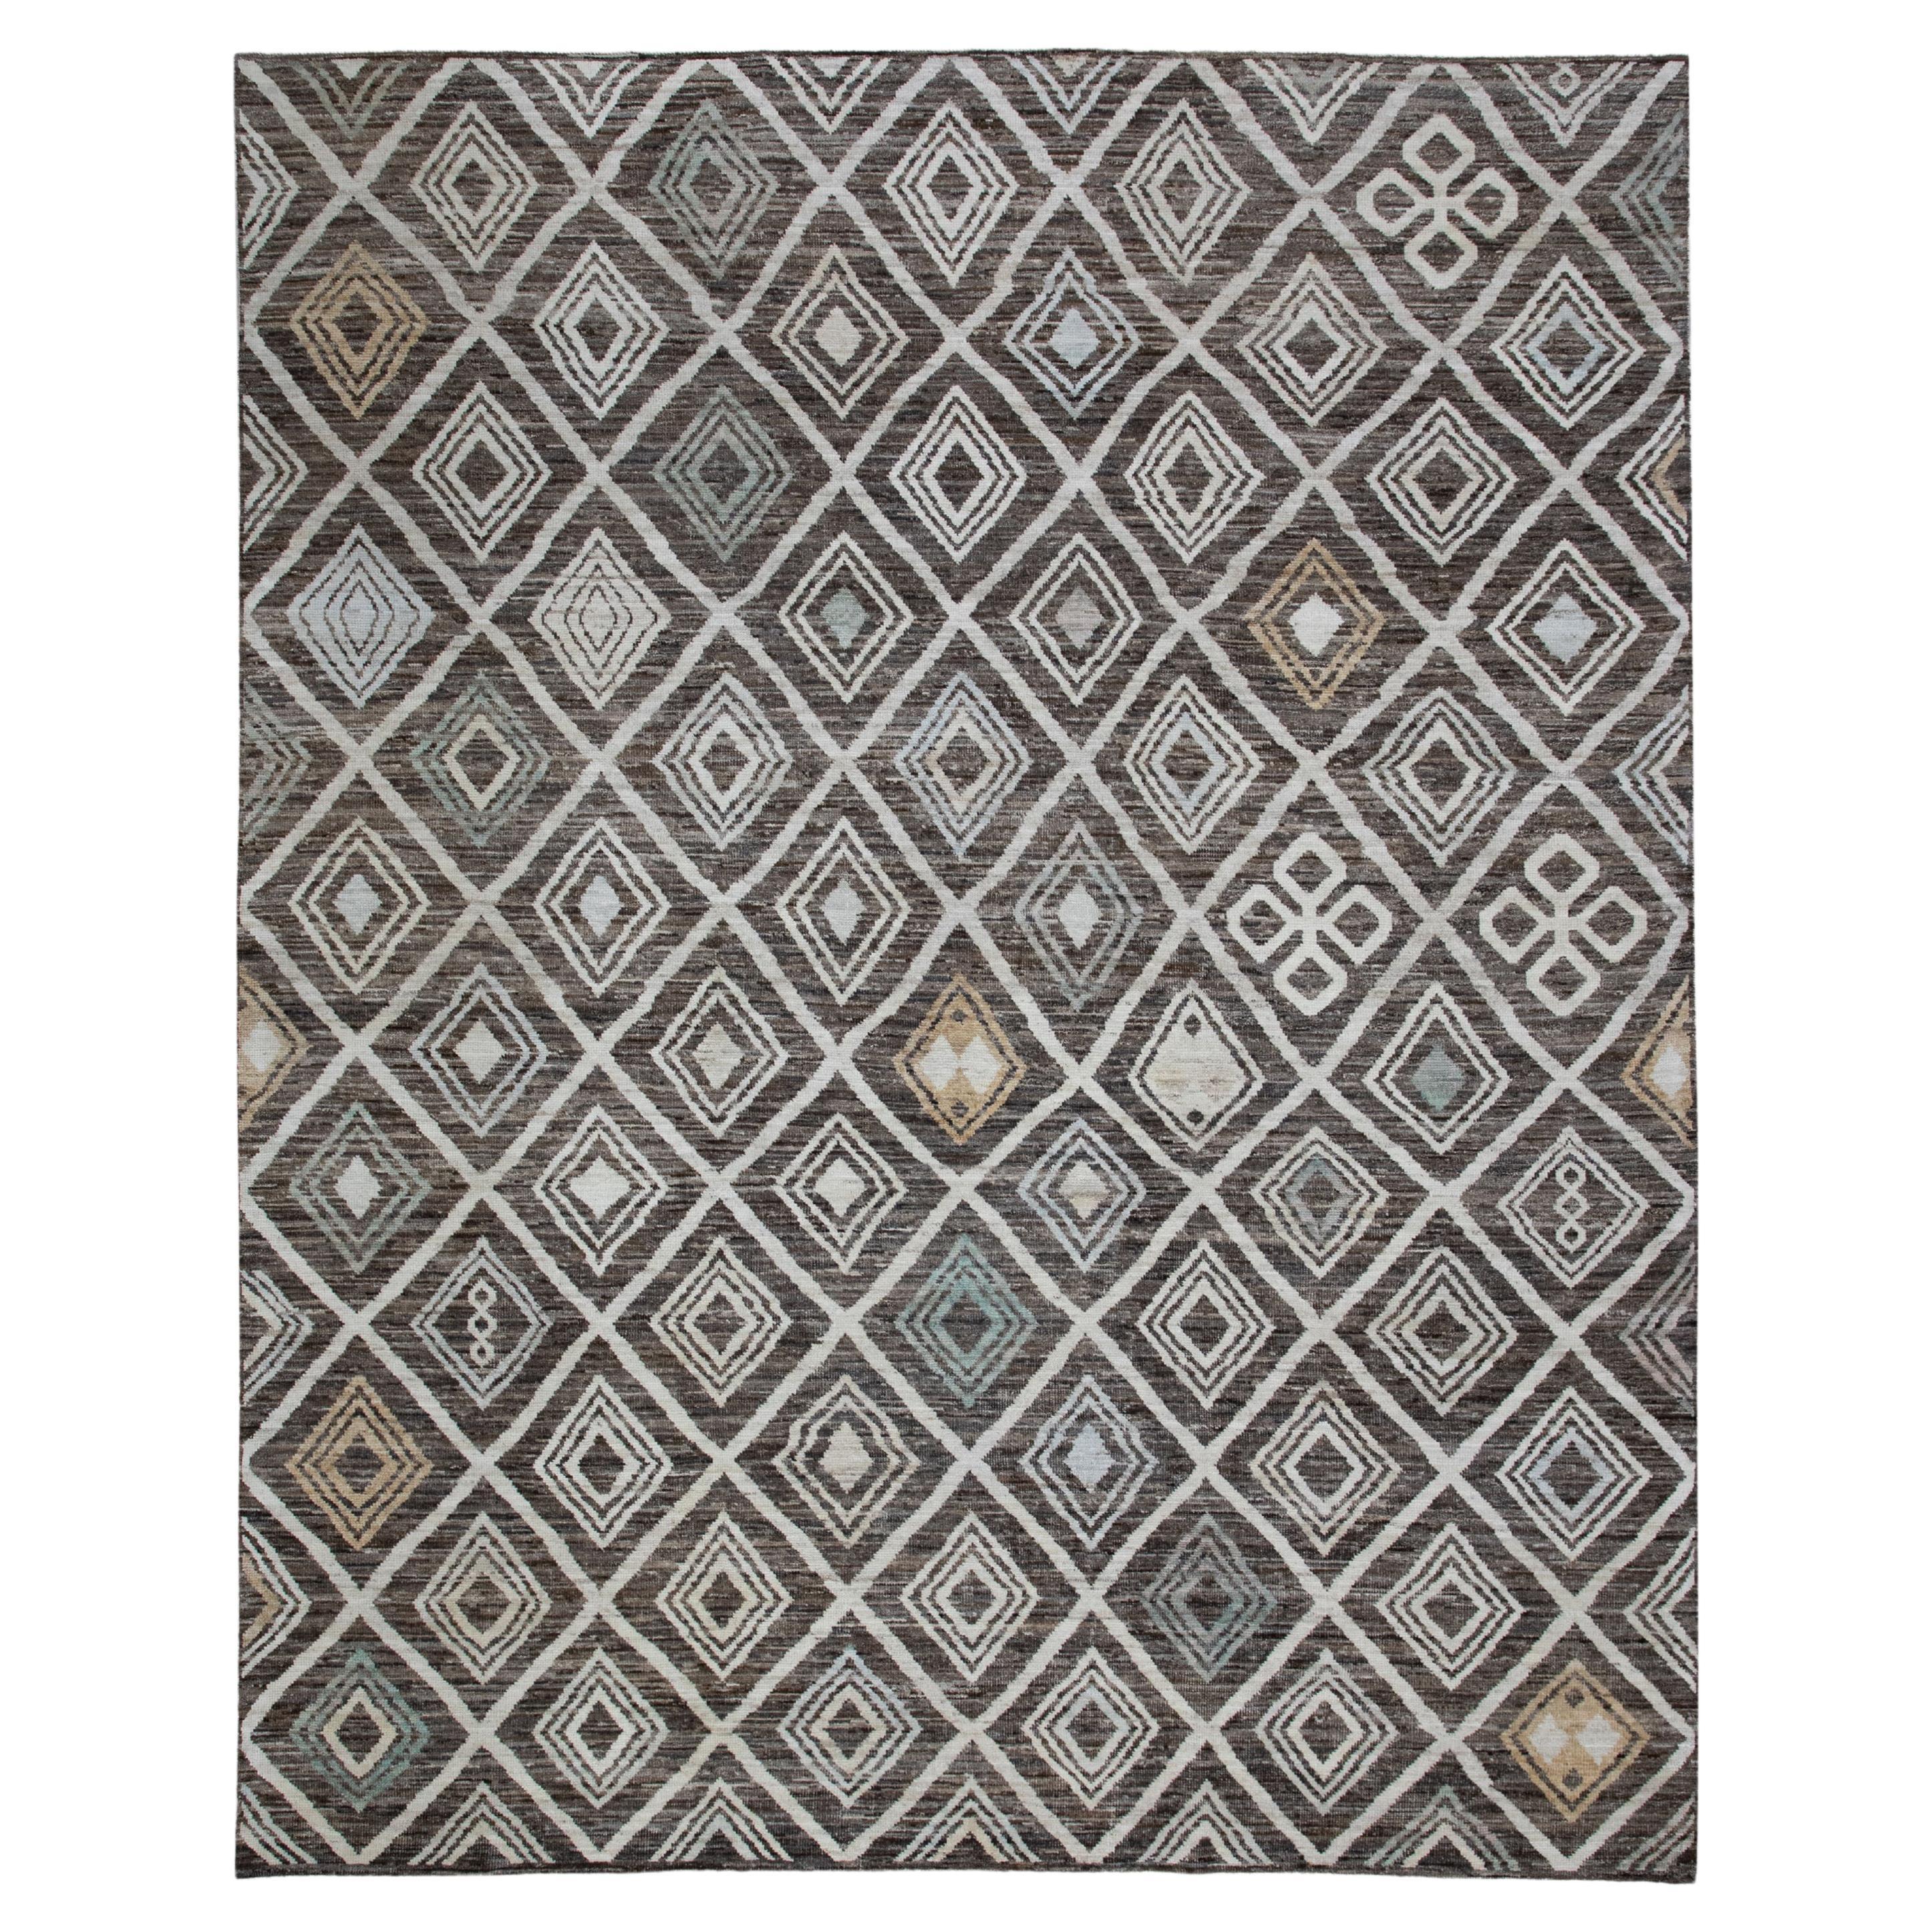 Handgewebter türkischer Oushak-Teppich aus Wolle 9'x 11'6"